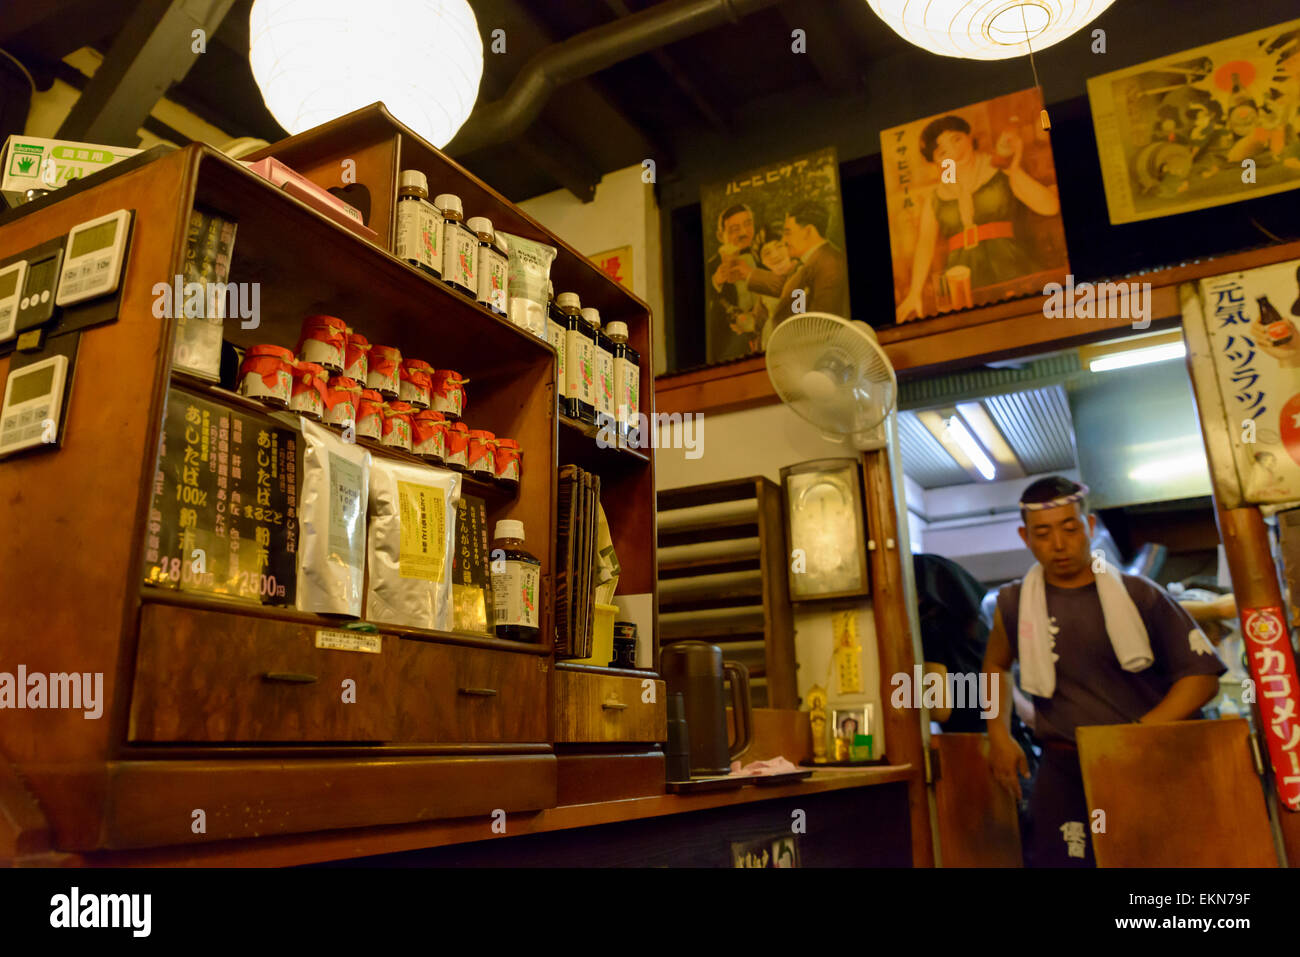 El interior de un restaurante japonés o café en un viejo, de estilo tradicional, a partir de la pre-guerra de parte de la era Showa. A la antigua usanza; Tokio, Japón; Asia Foto de stock